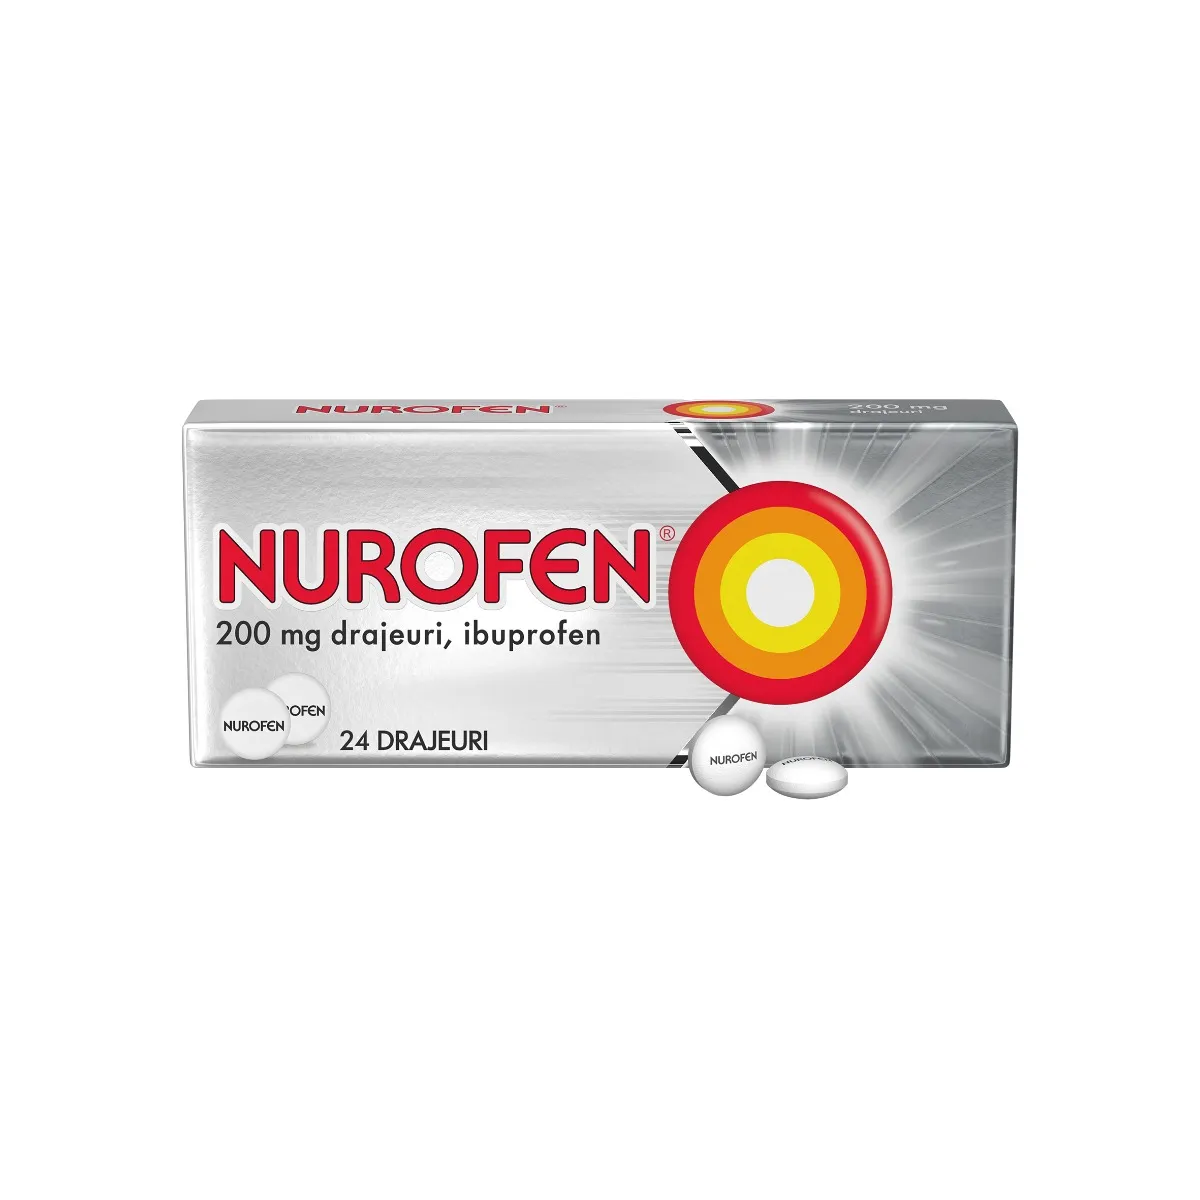 Nurofen 200 mg, 24 drajeuri, Reckitt Benckiser